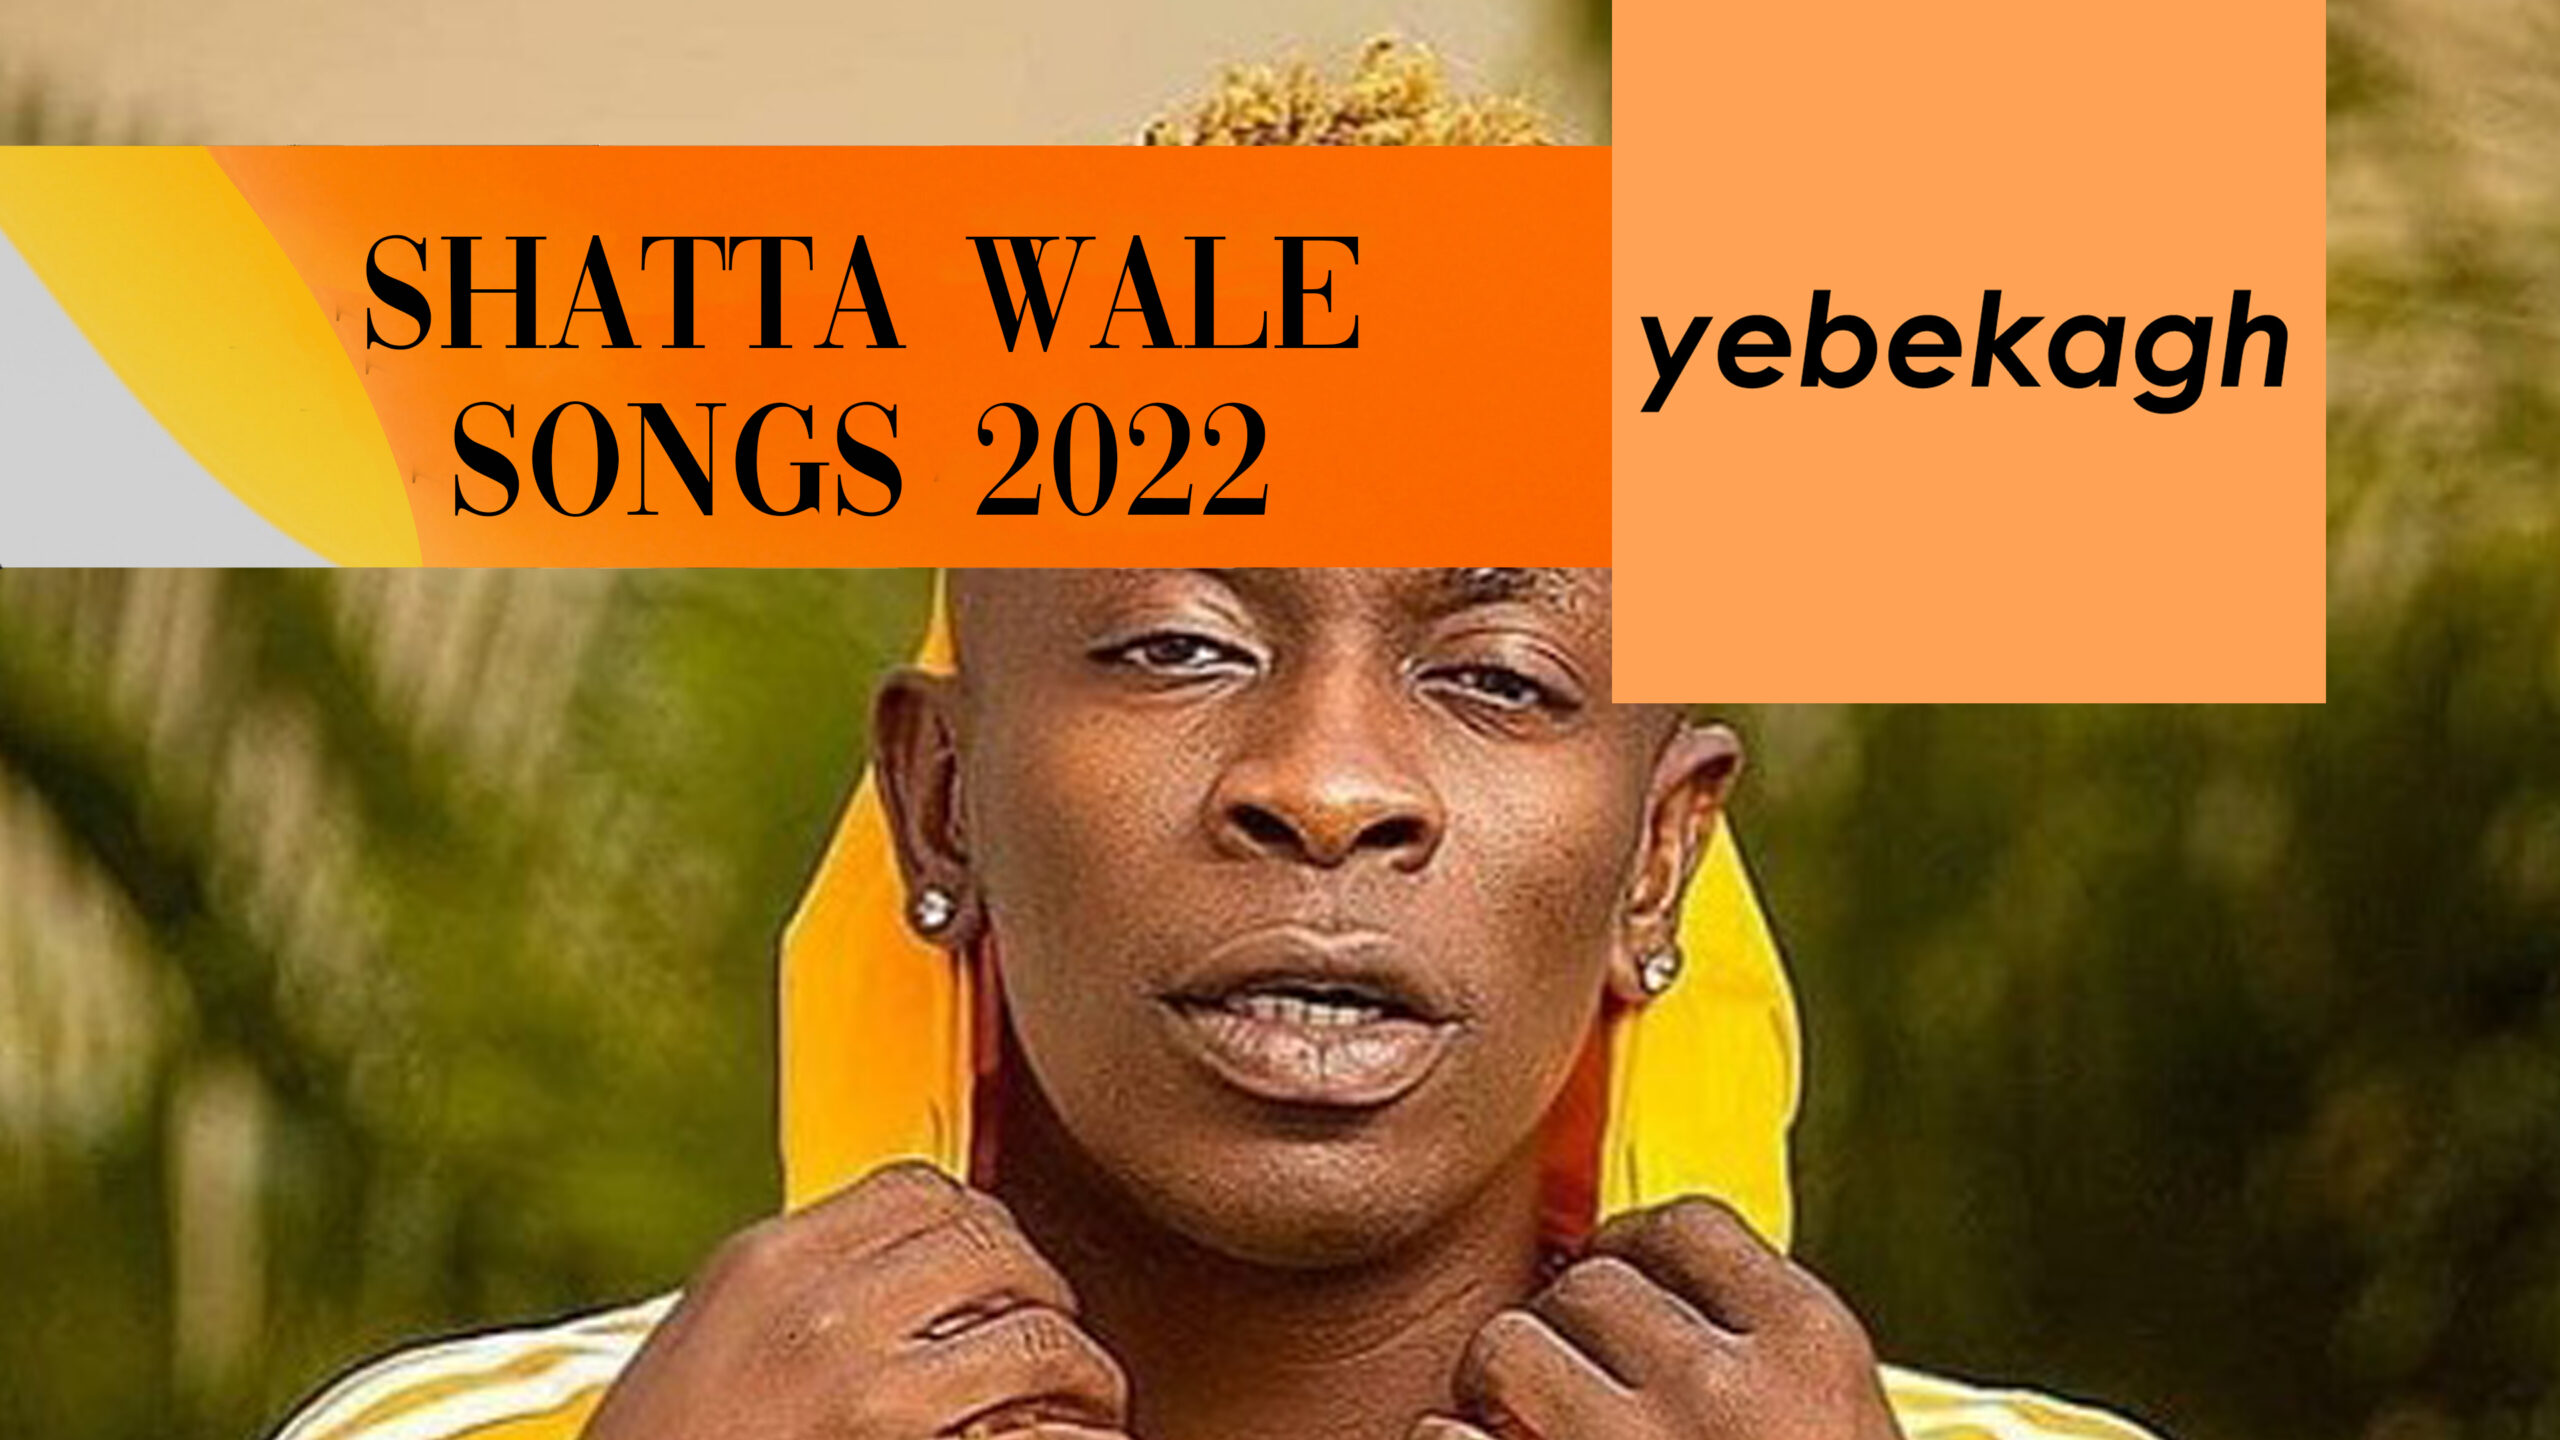 Shatta Wale Songs 2022